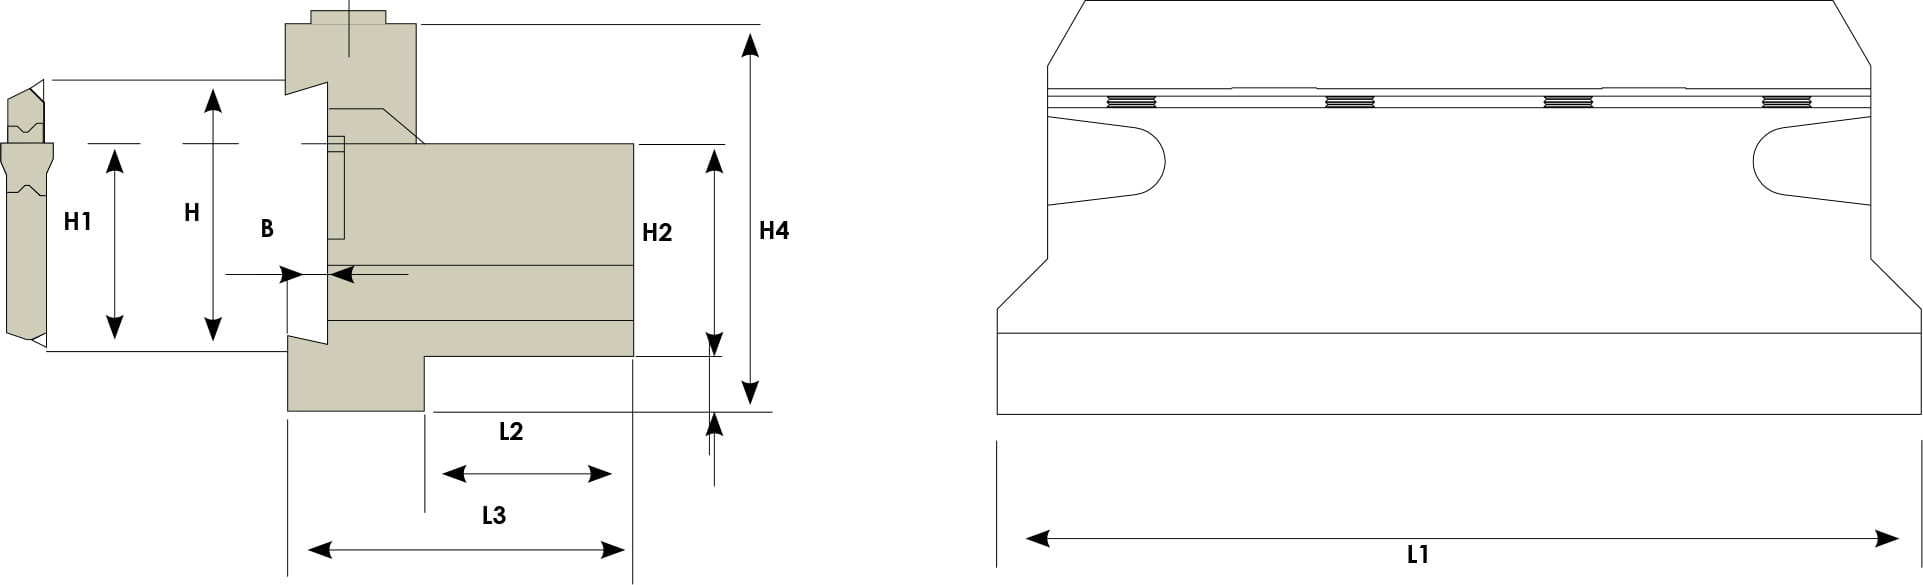 Technische Zeichnung von einem Halter für Stechschwerter. Schwarze Linien auf weißem Hintergrund. Mit Größenangaben. Links befindet sich eine Seitenansicht, rechts eine Vorderansicht.